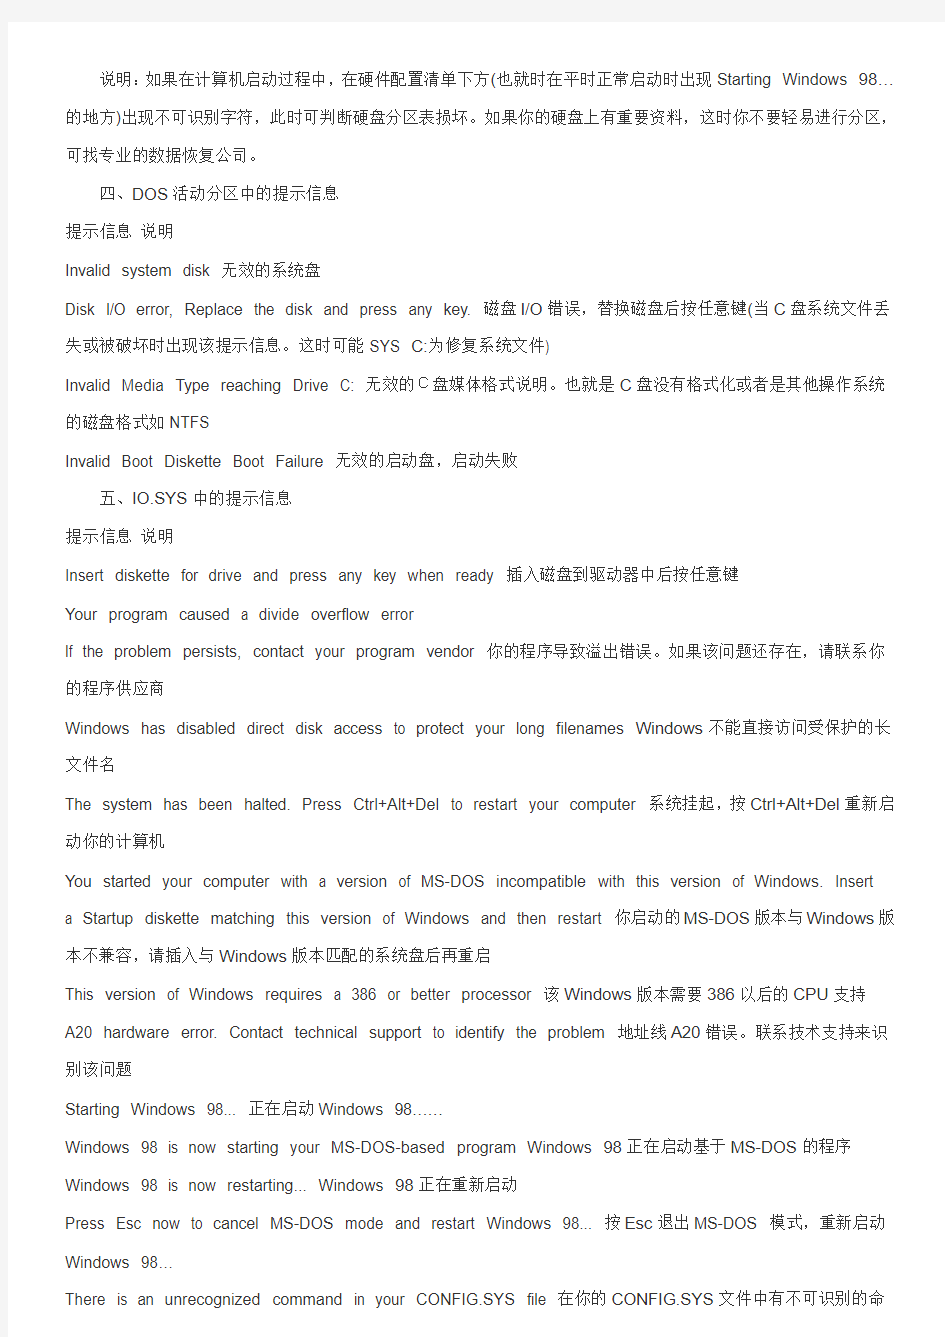 电脑各种错误信息的中文意思(绝对有用!)